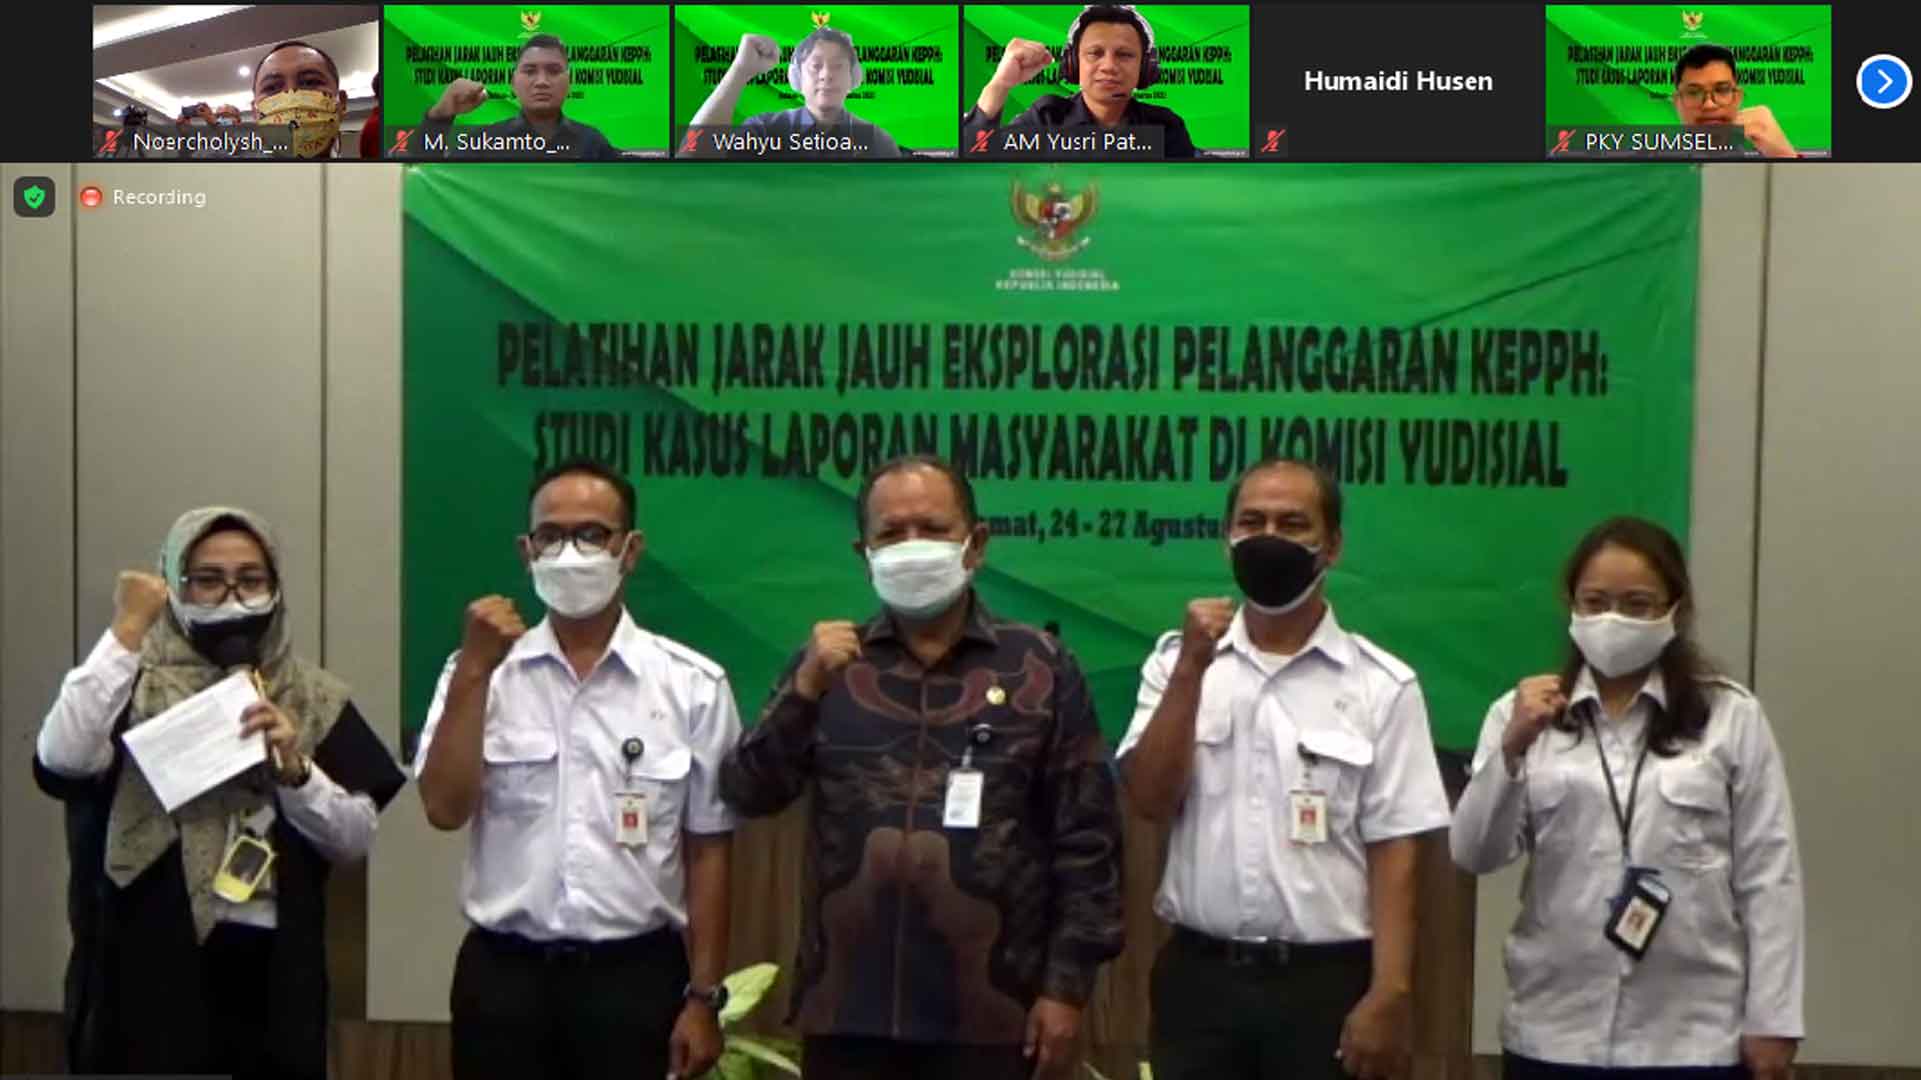 KY Gelar Pelatihan Eksplorasi KEPPH Bagi Hakim di Sulawesi Tenggara Secara Virtual